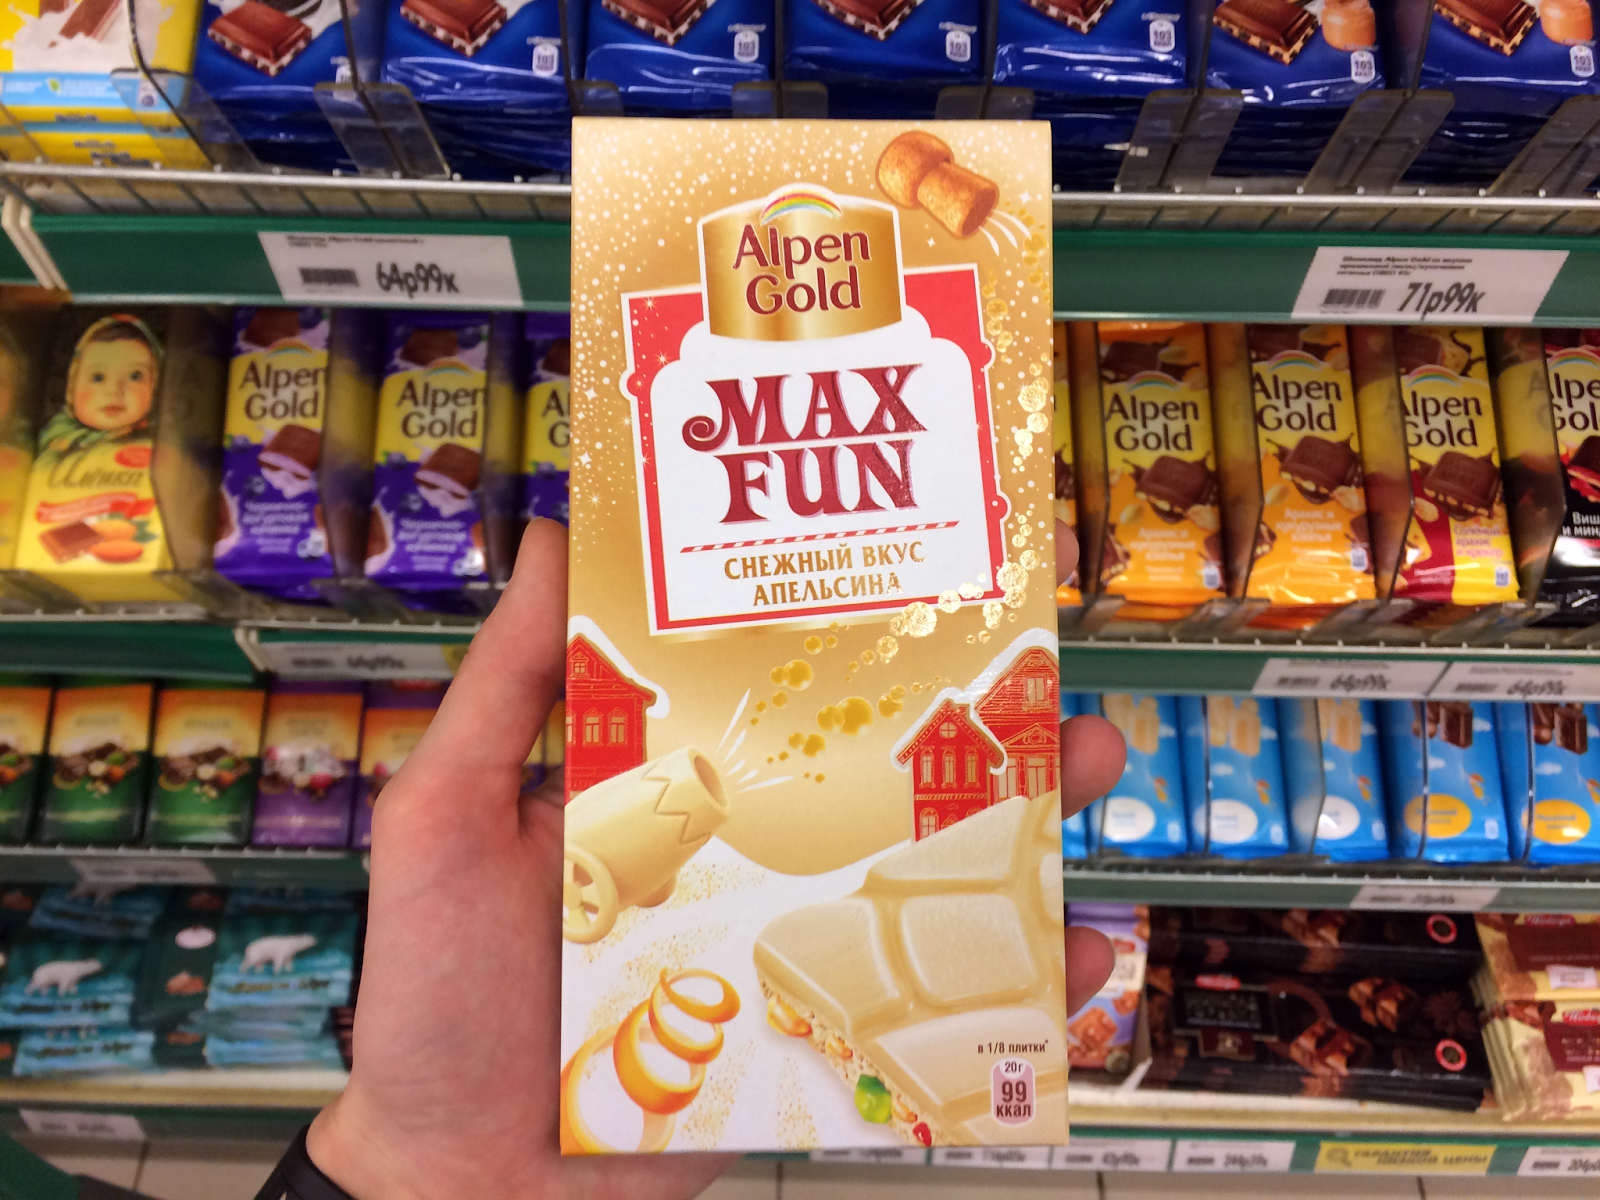 Gold funny. Alpen Gold Max fun вкусы. Шоколад Альпен Гольд Мах фан. Alpen Gold Max fun новый-2. Шоколад Альпен Гольд Макс фан вкусы.